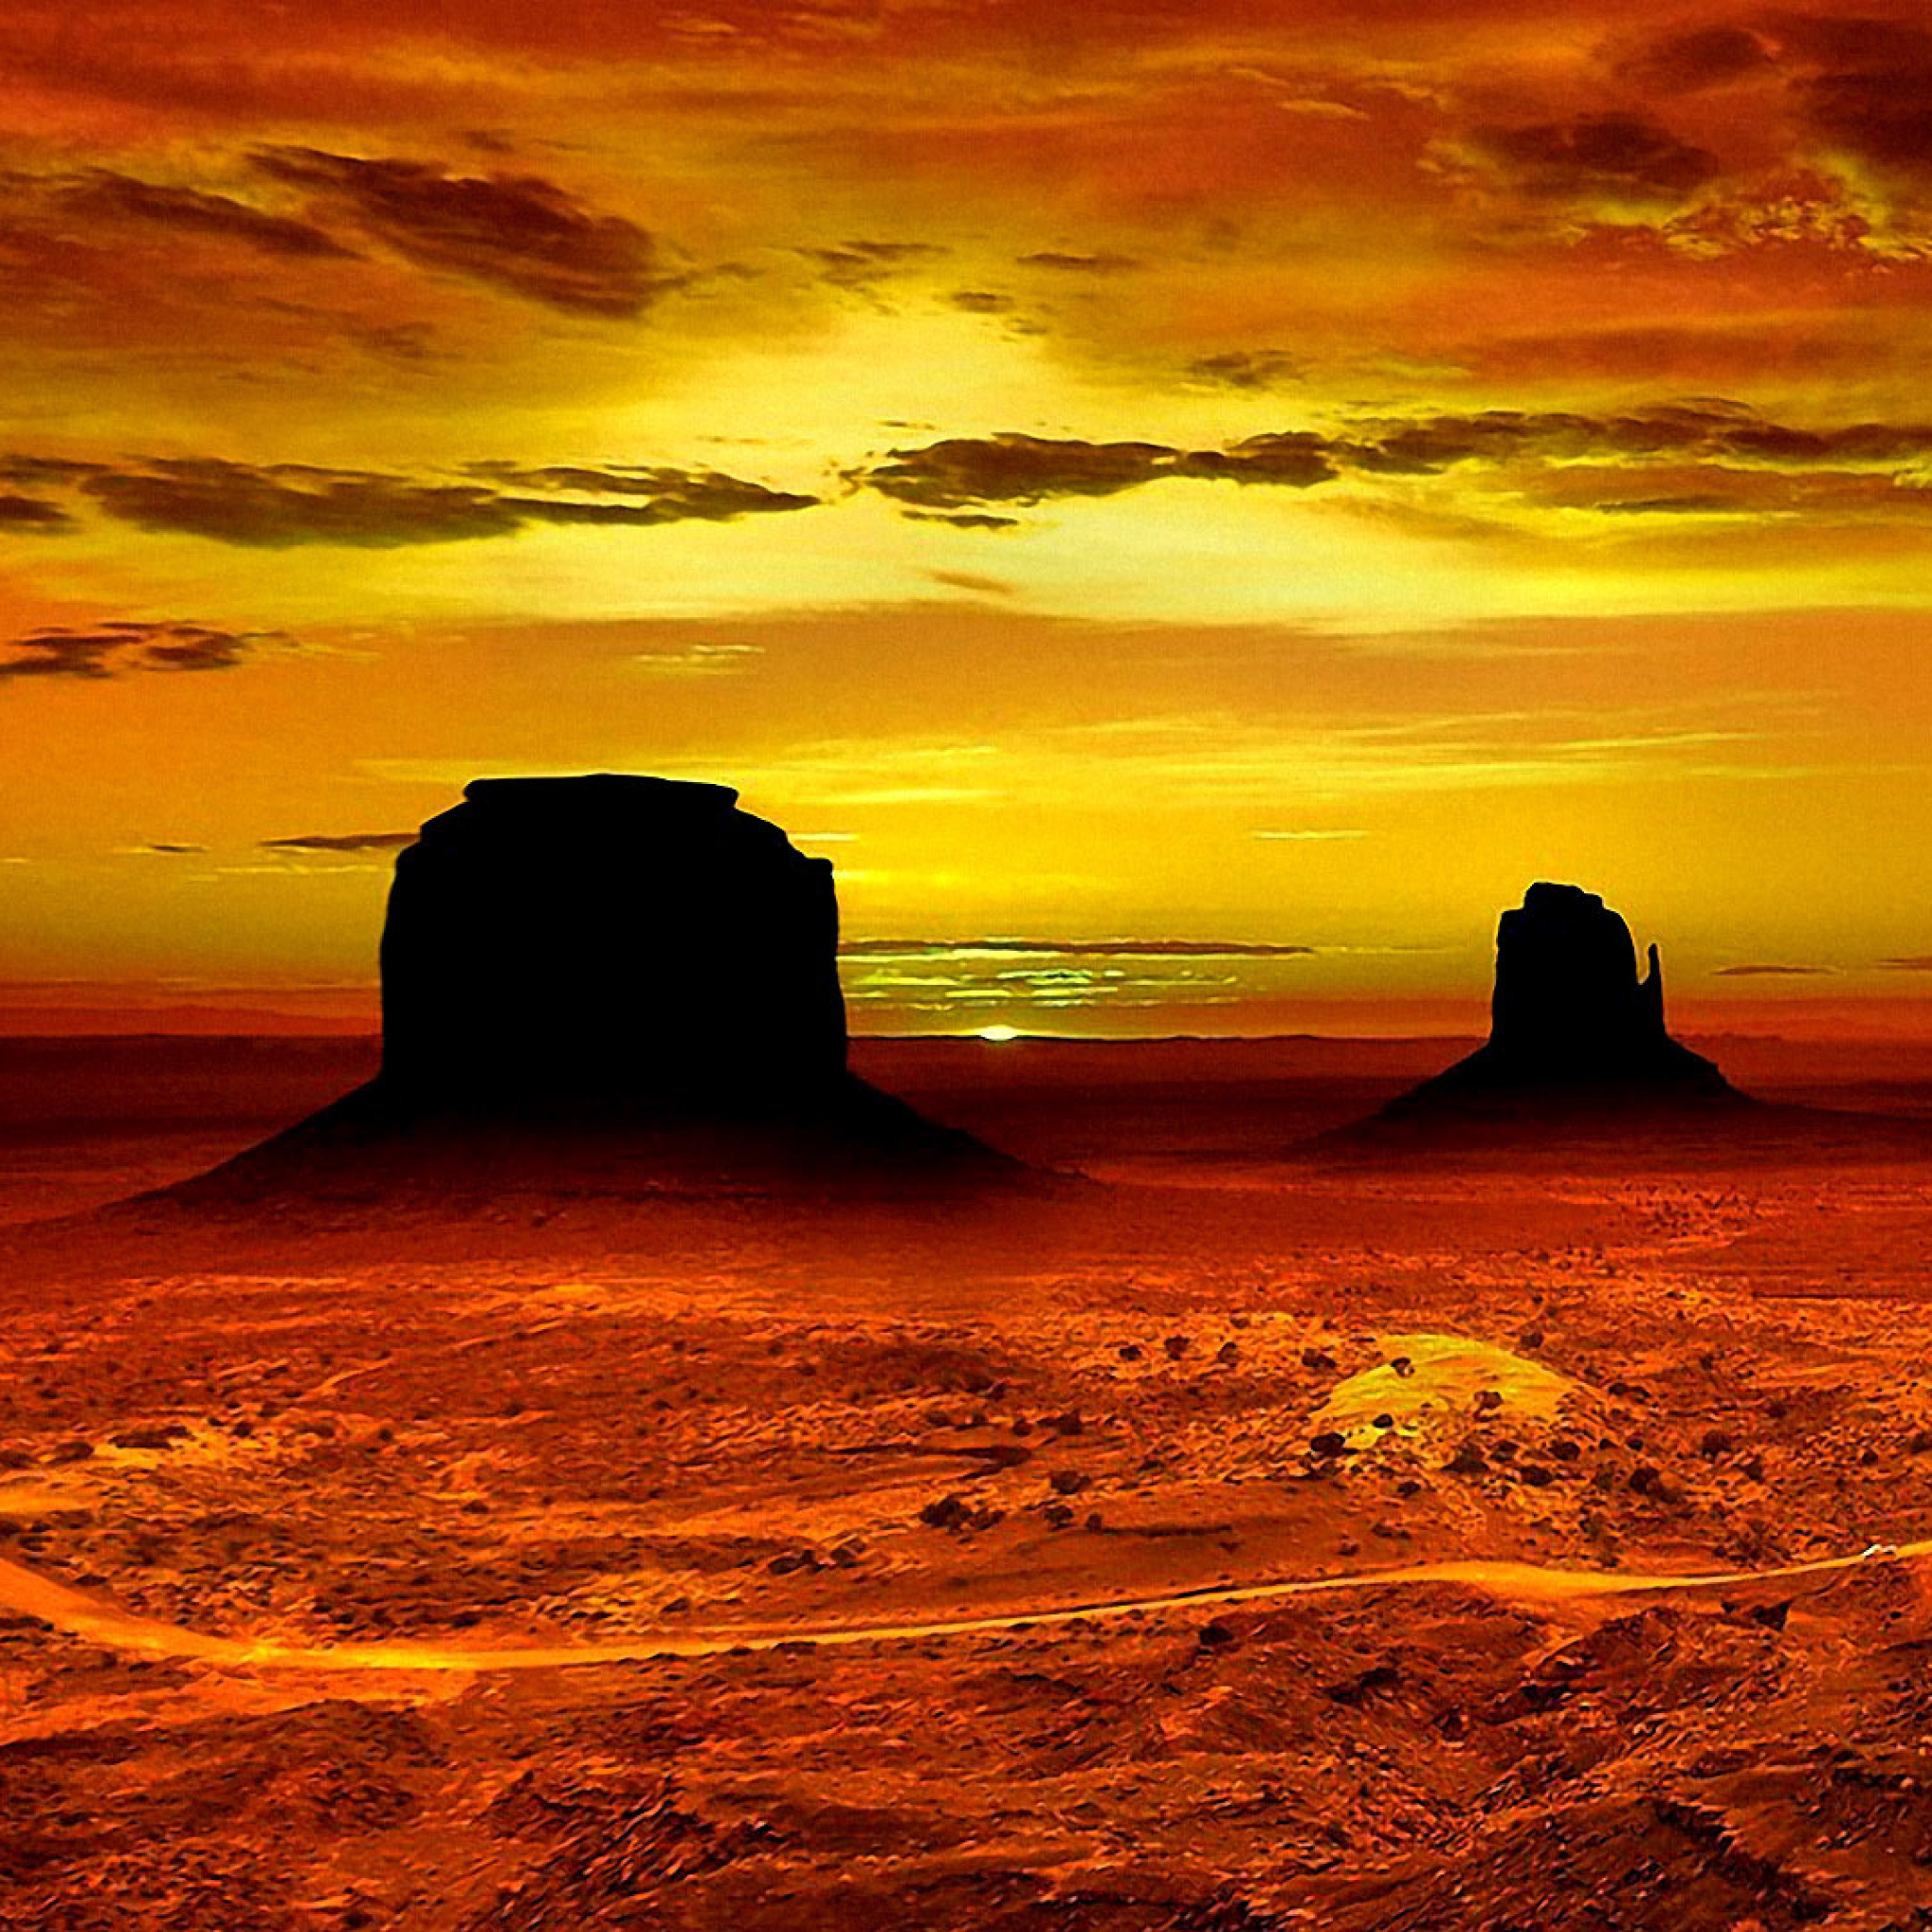 Обои Monument Valley Navajo Tribal Park in Arizona 2048x2048